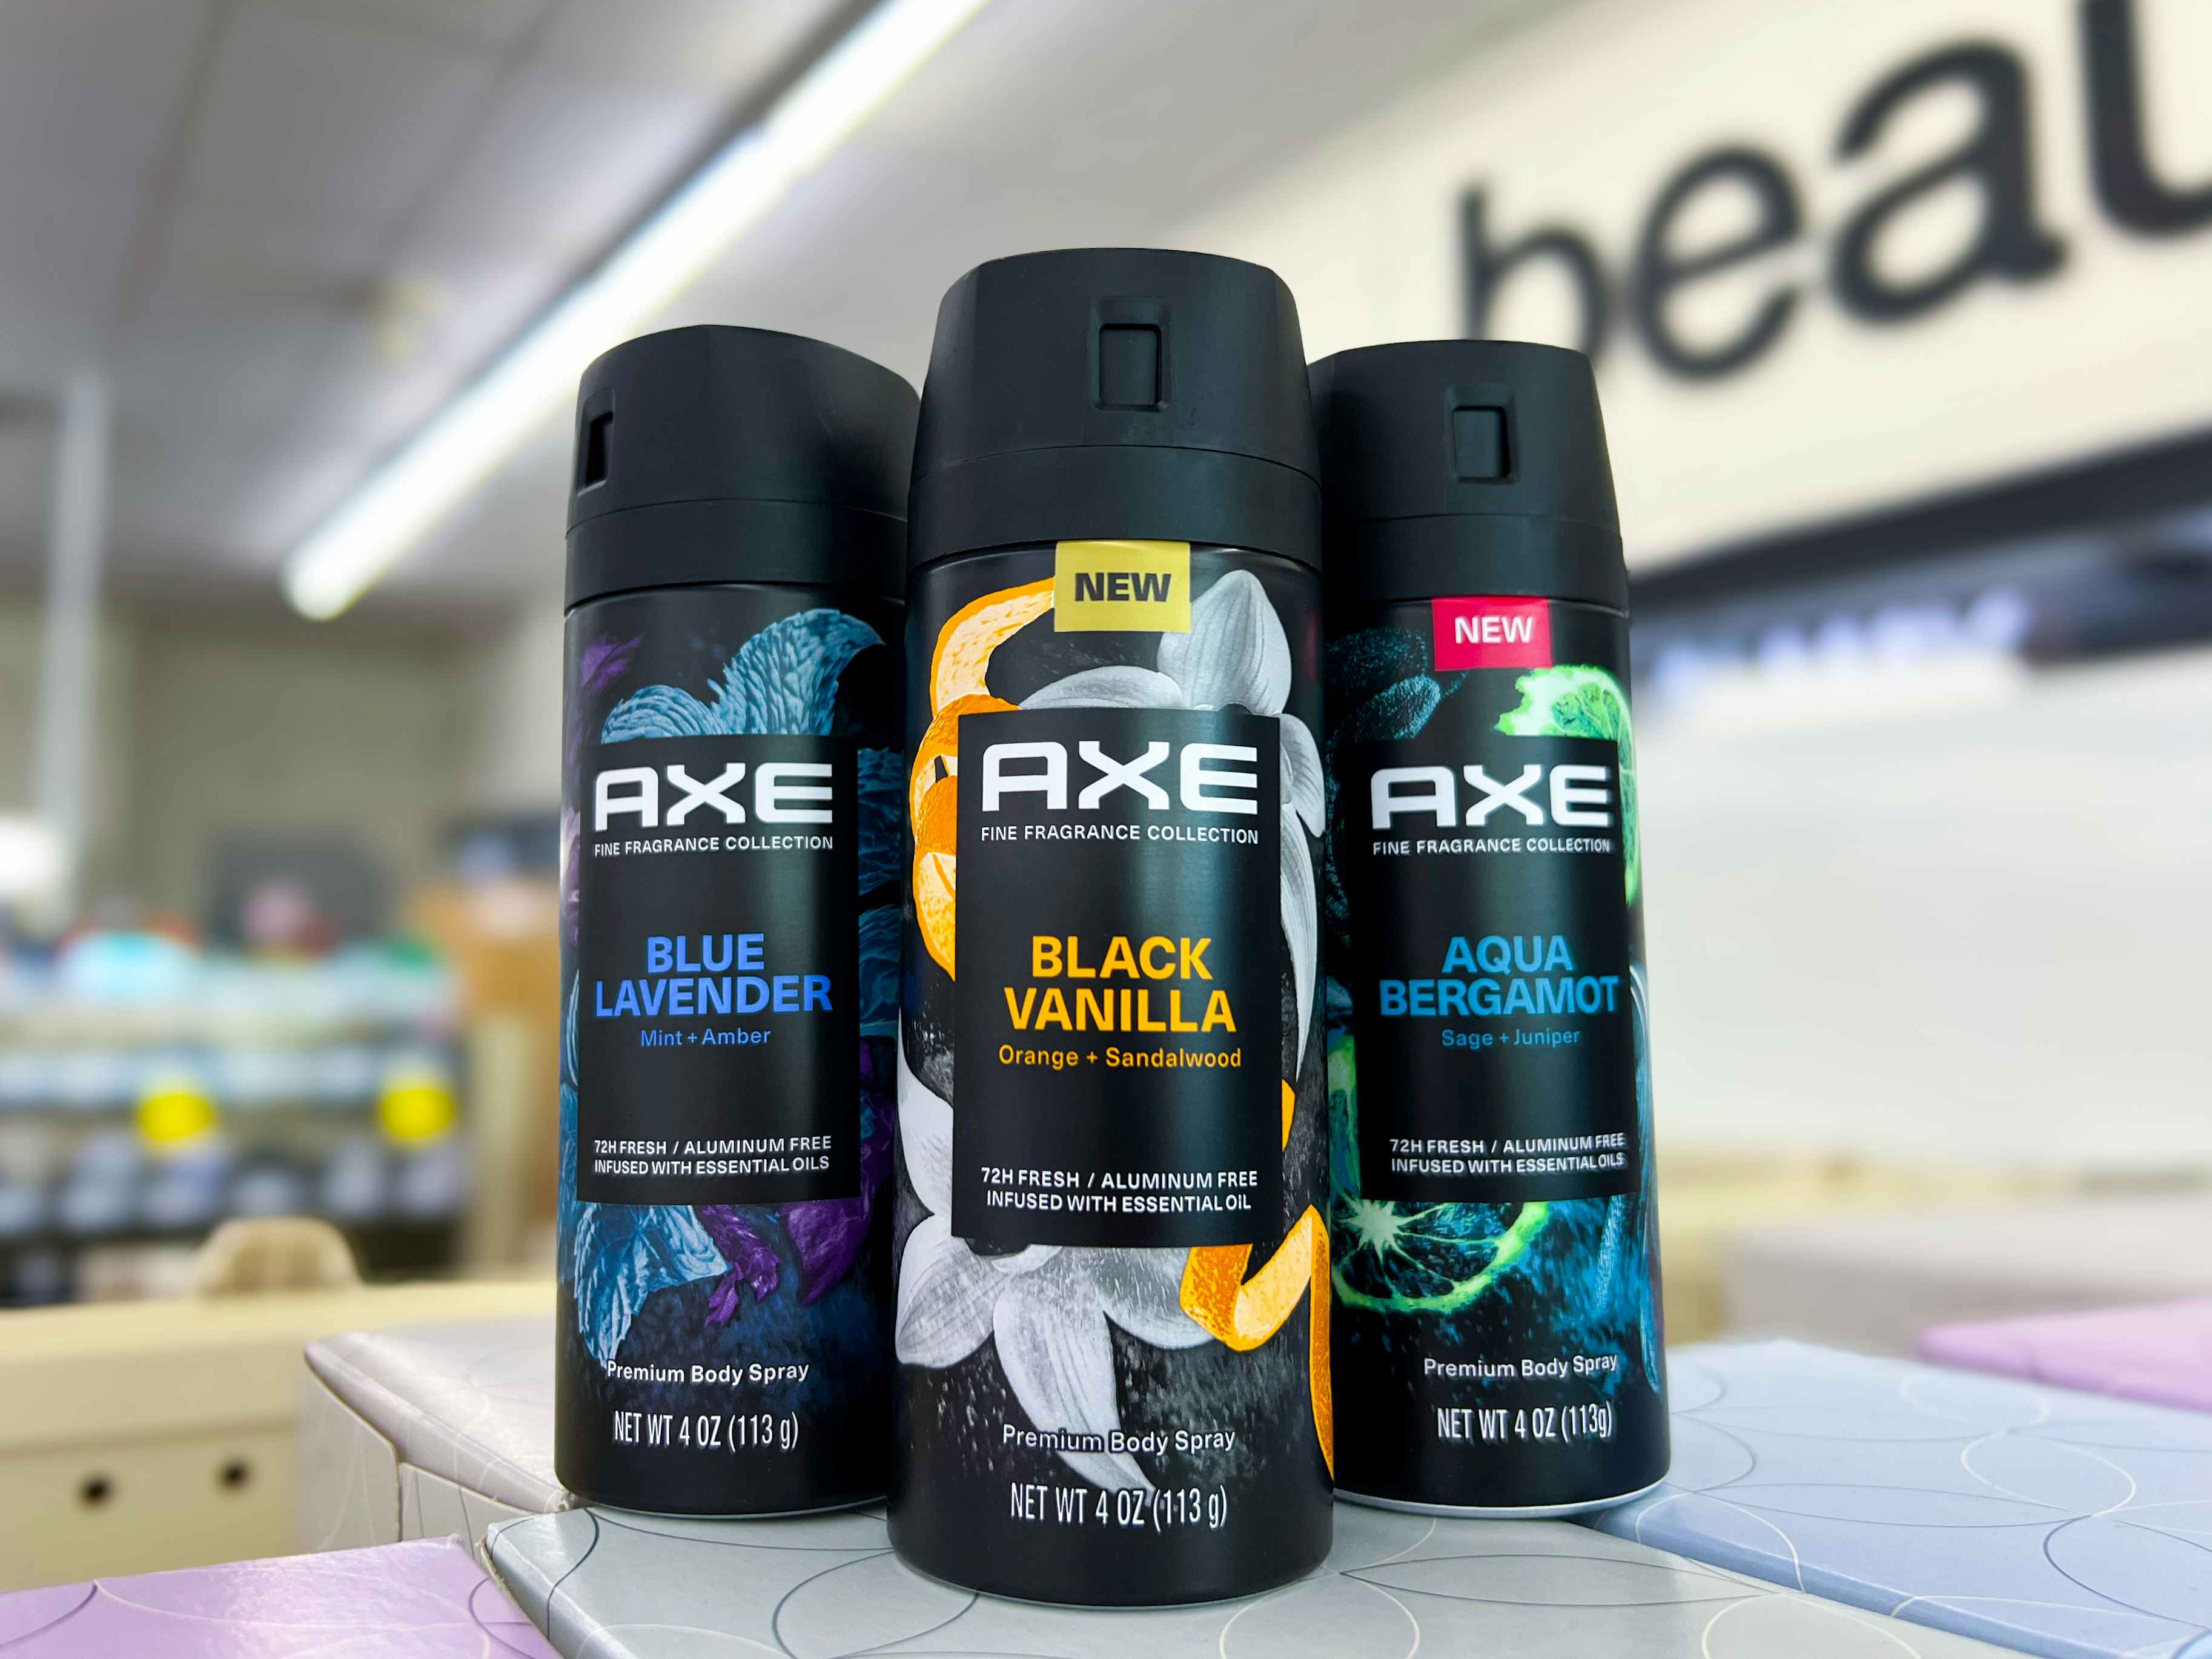 Save 40% on AXE Deodorant Body Sprays at CVS